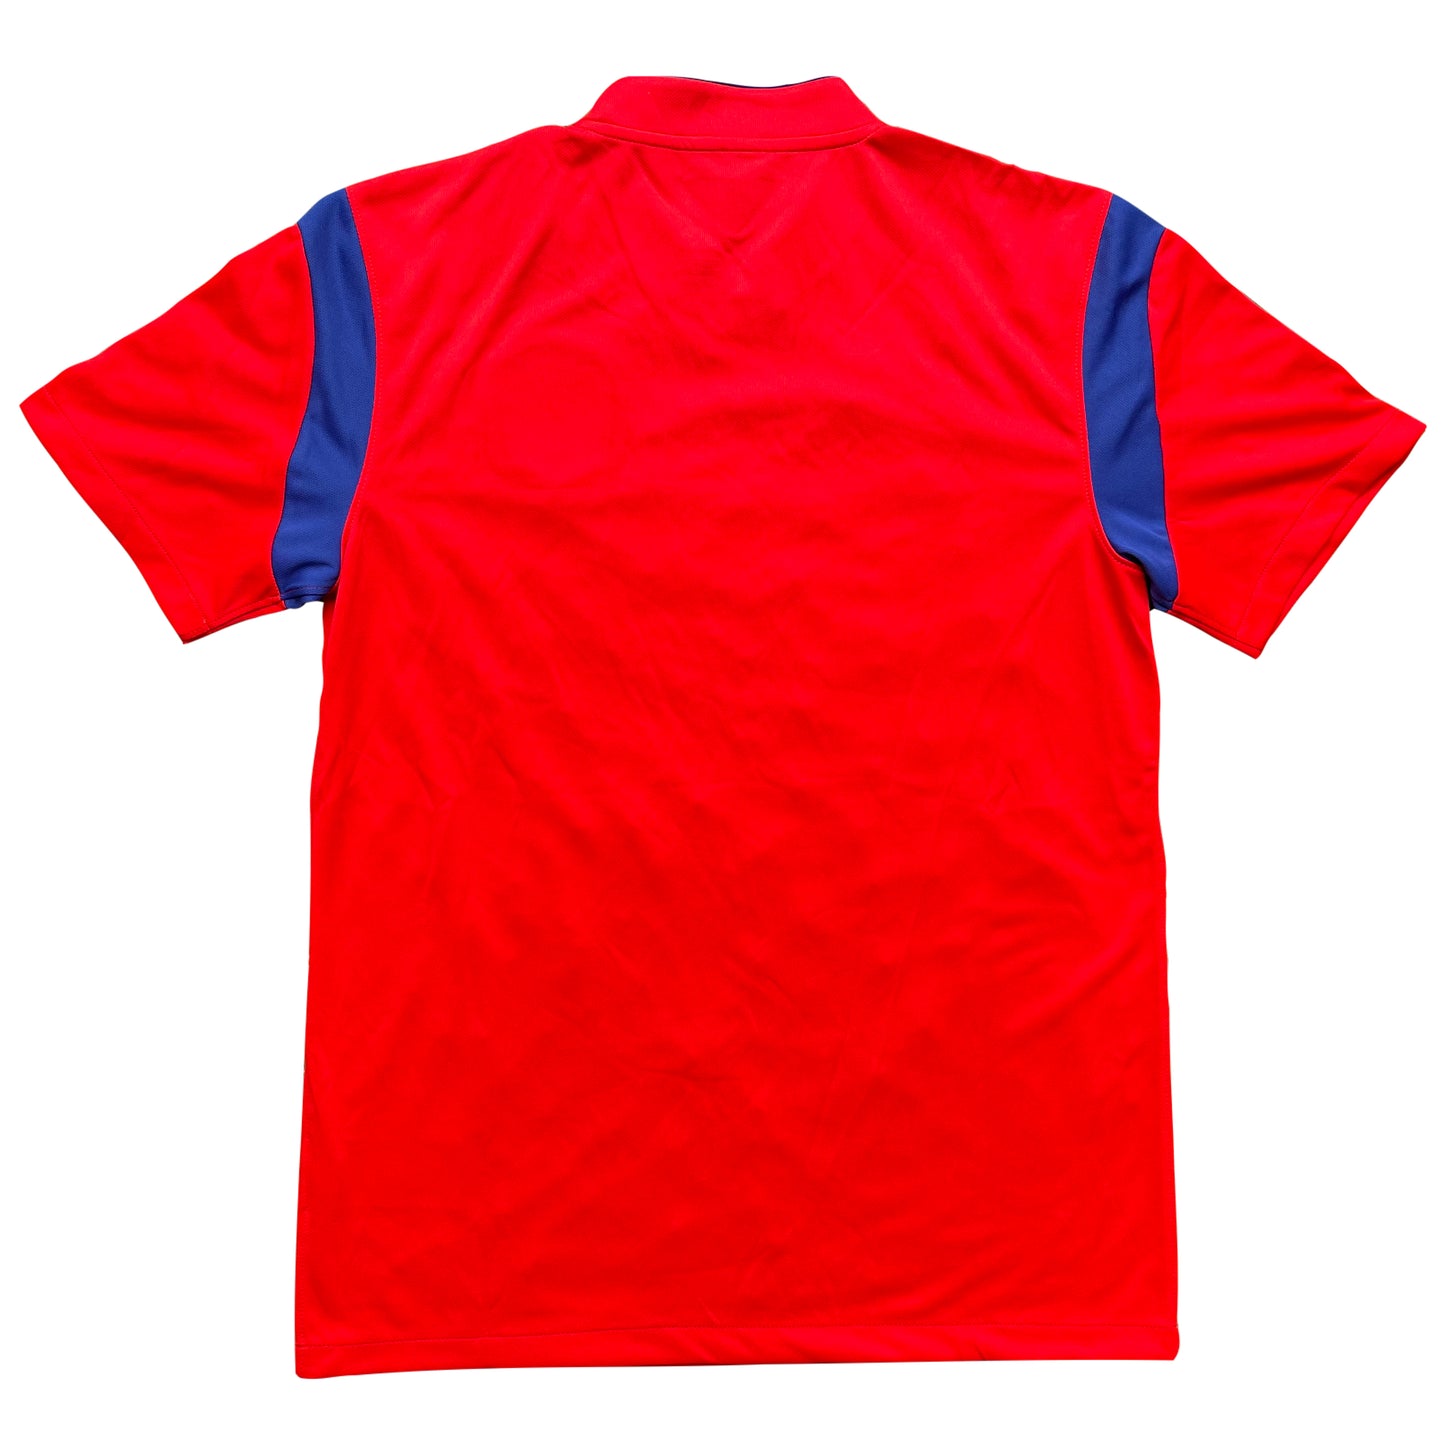 <tc>2014 Mundial Corea del Sur camiseta local (M)</tc>